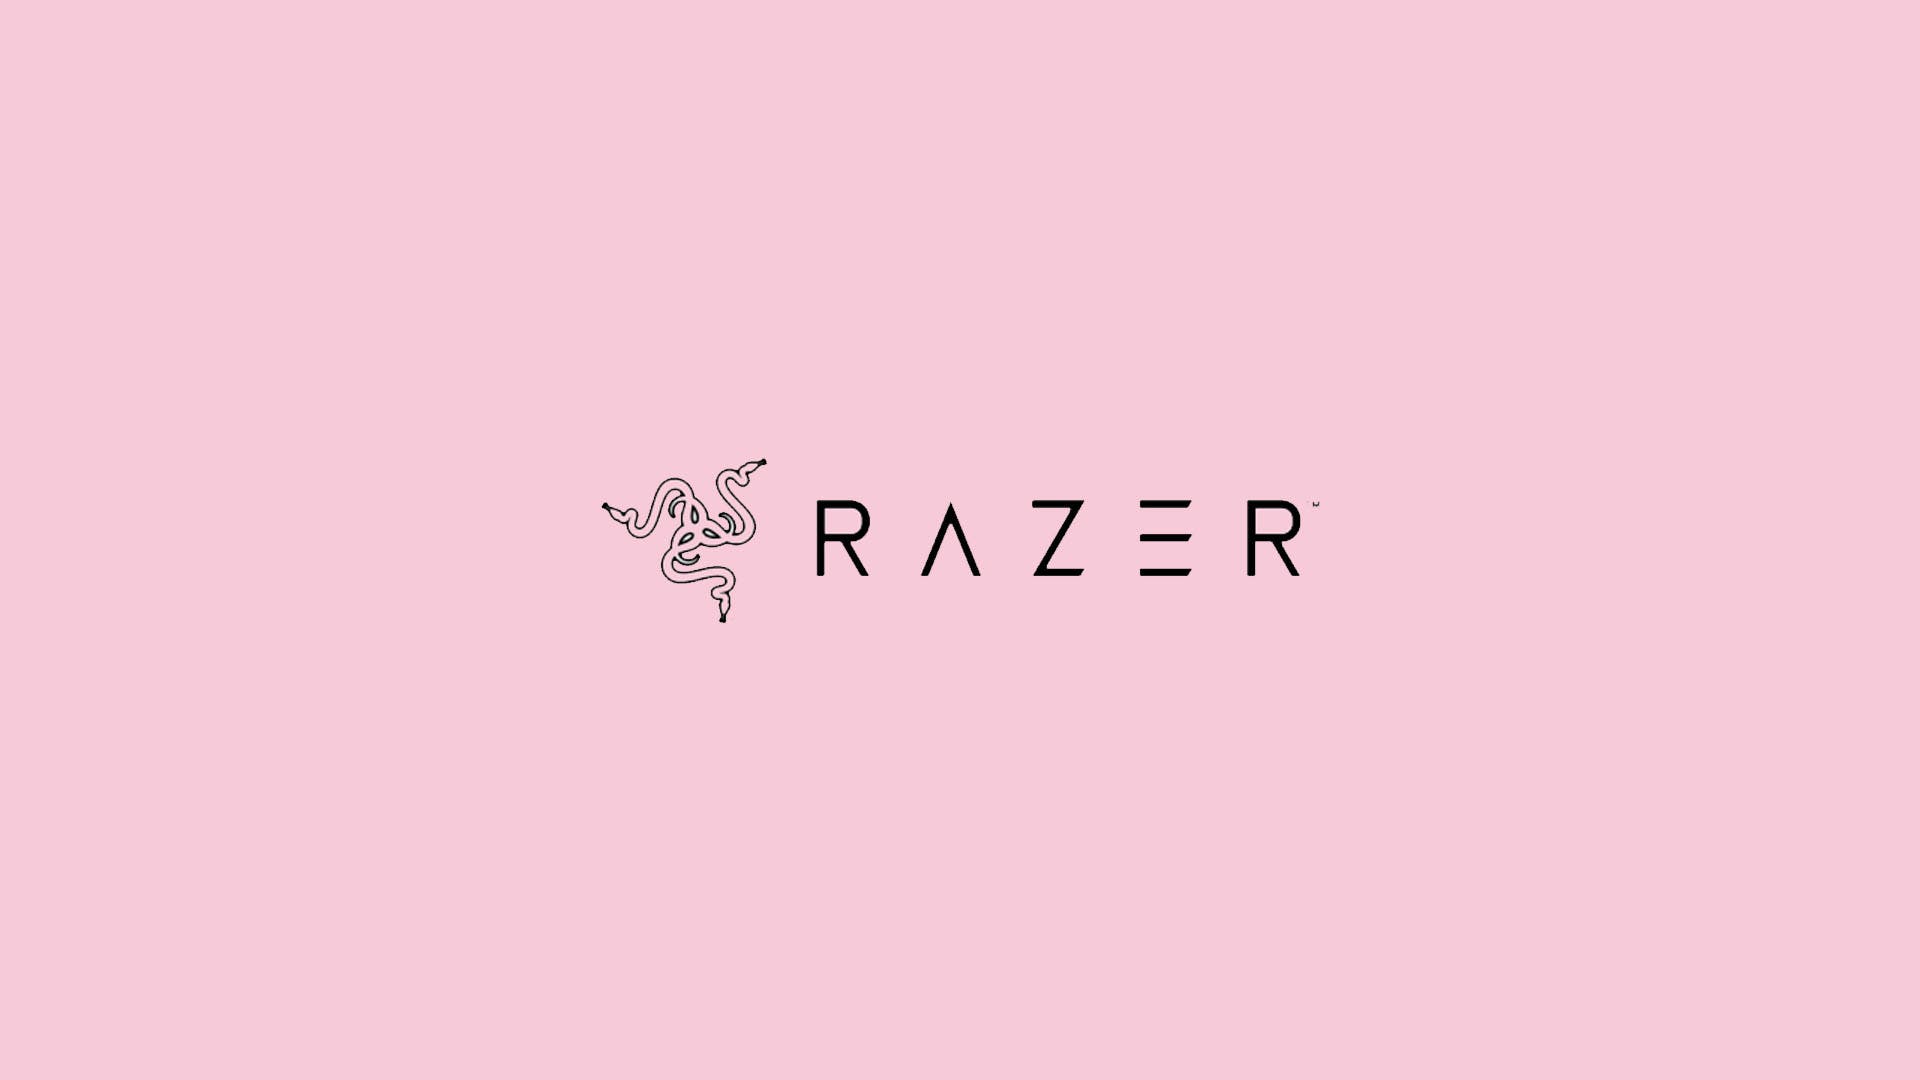 Razer is Offering a Cute Valentine's Day Discount. The Nerd Stash